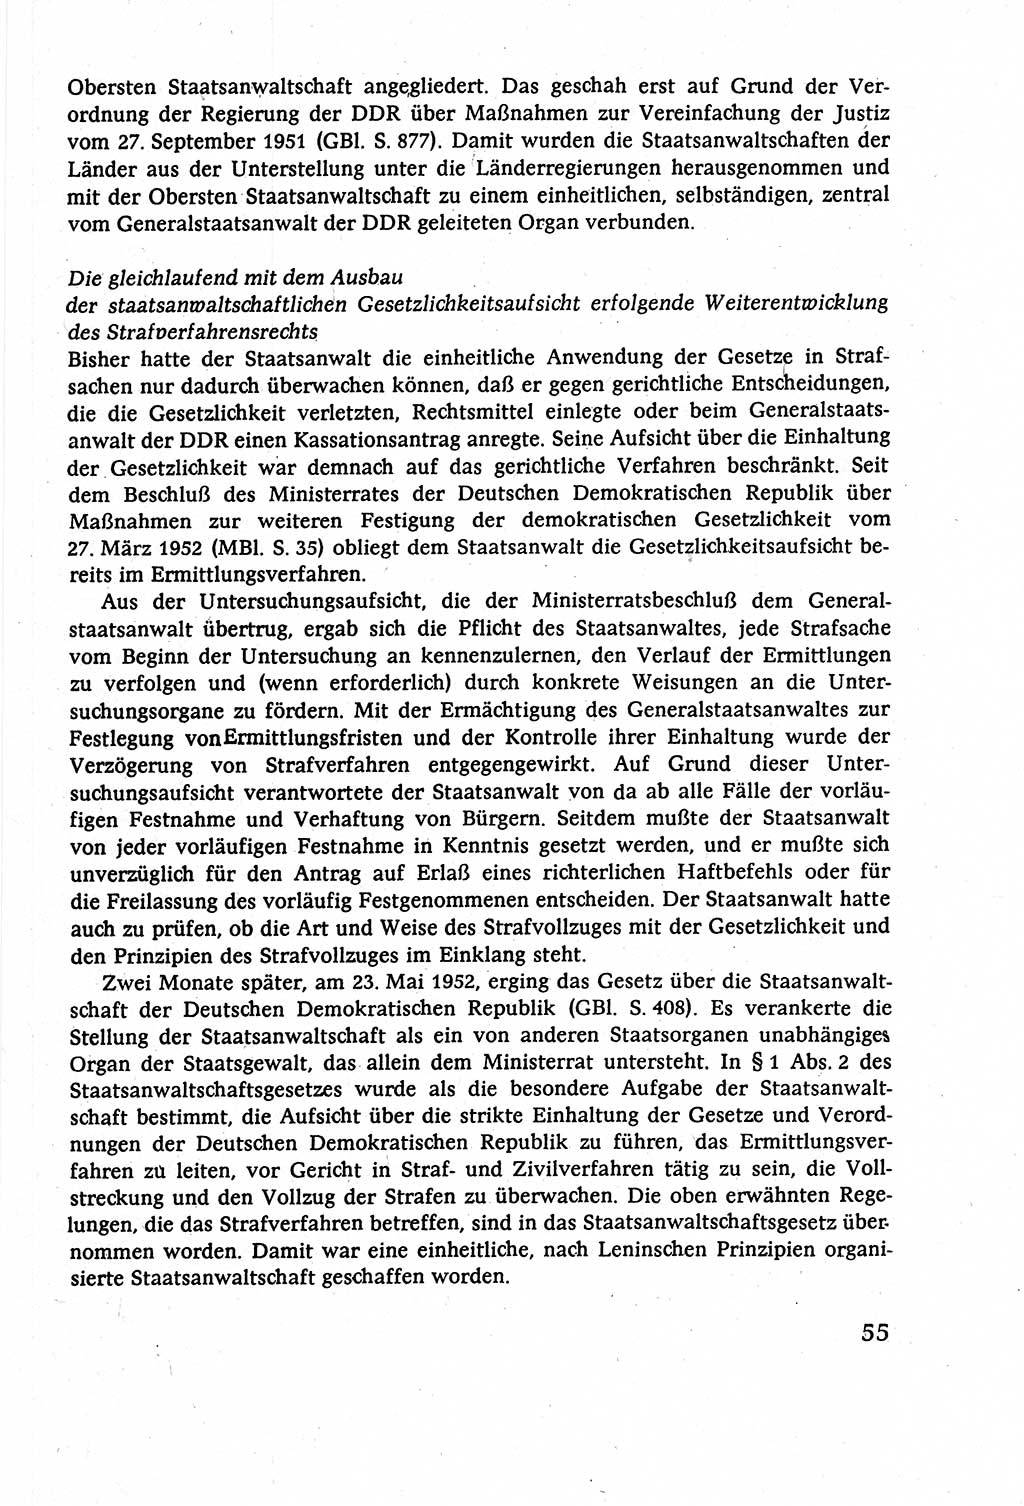 Strafverfahrensrecht [Deutsche Demokratische Republik (DDR)], Lehrbuch 1977, Seite 55 (Strafverf.-R. DDR Lb. 1977, S. 55)